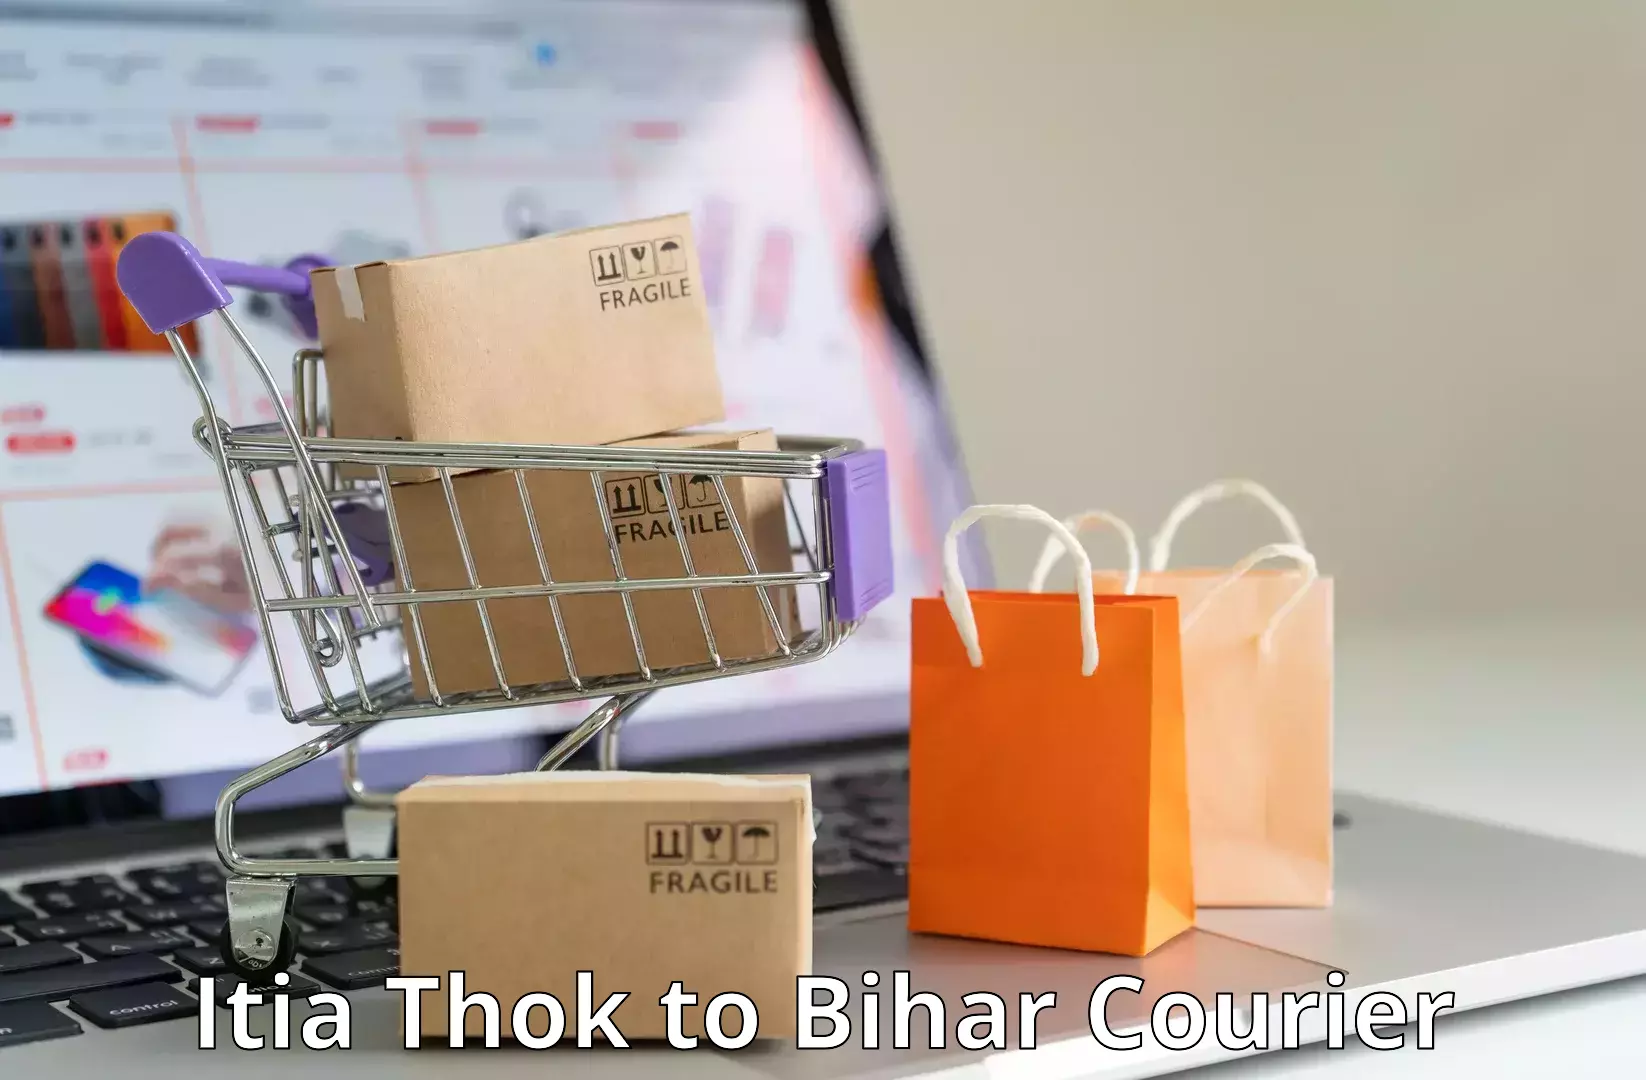 24/7 courier service Itia Thok to Thakurganj